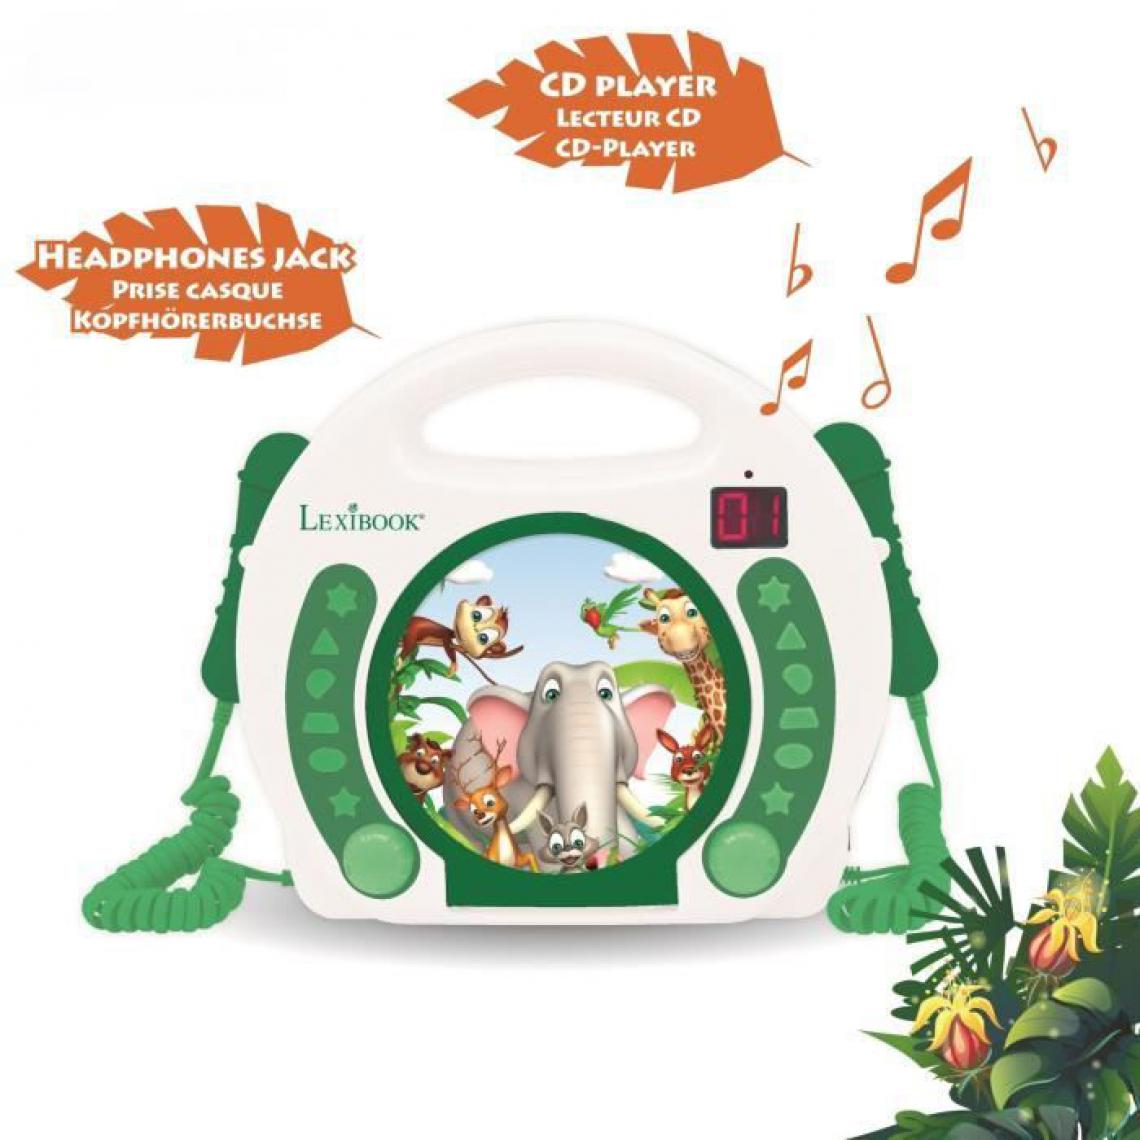 Icaverne - LECTEUR CD - RADIO - BOOMBOX Lecteur CD portable avec 2 microphones Animaux - Radio, lecteur CD/MP3 enfant